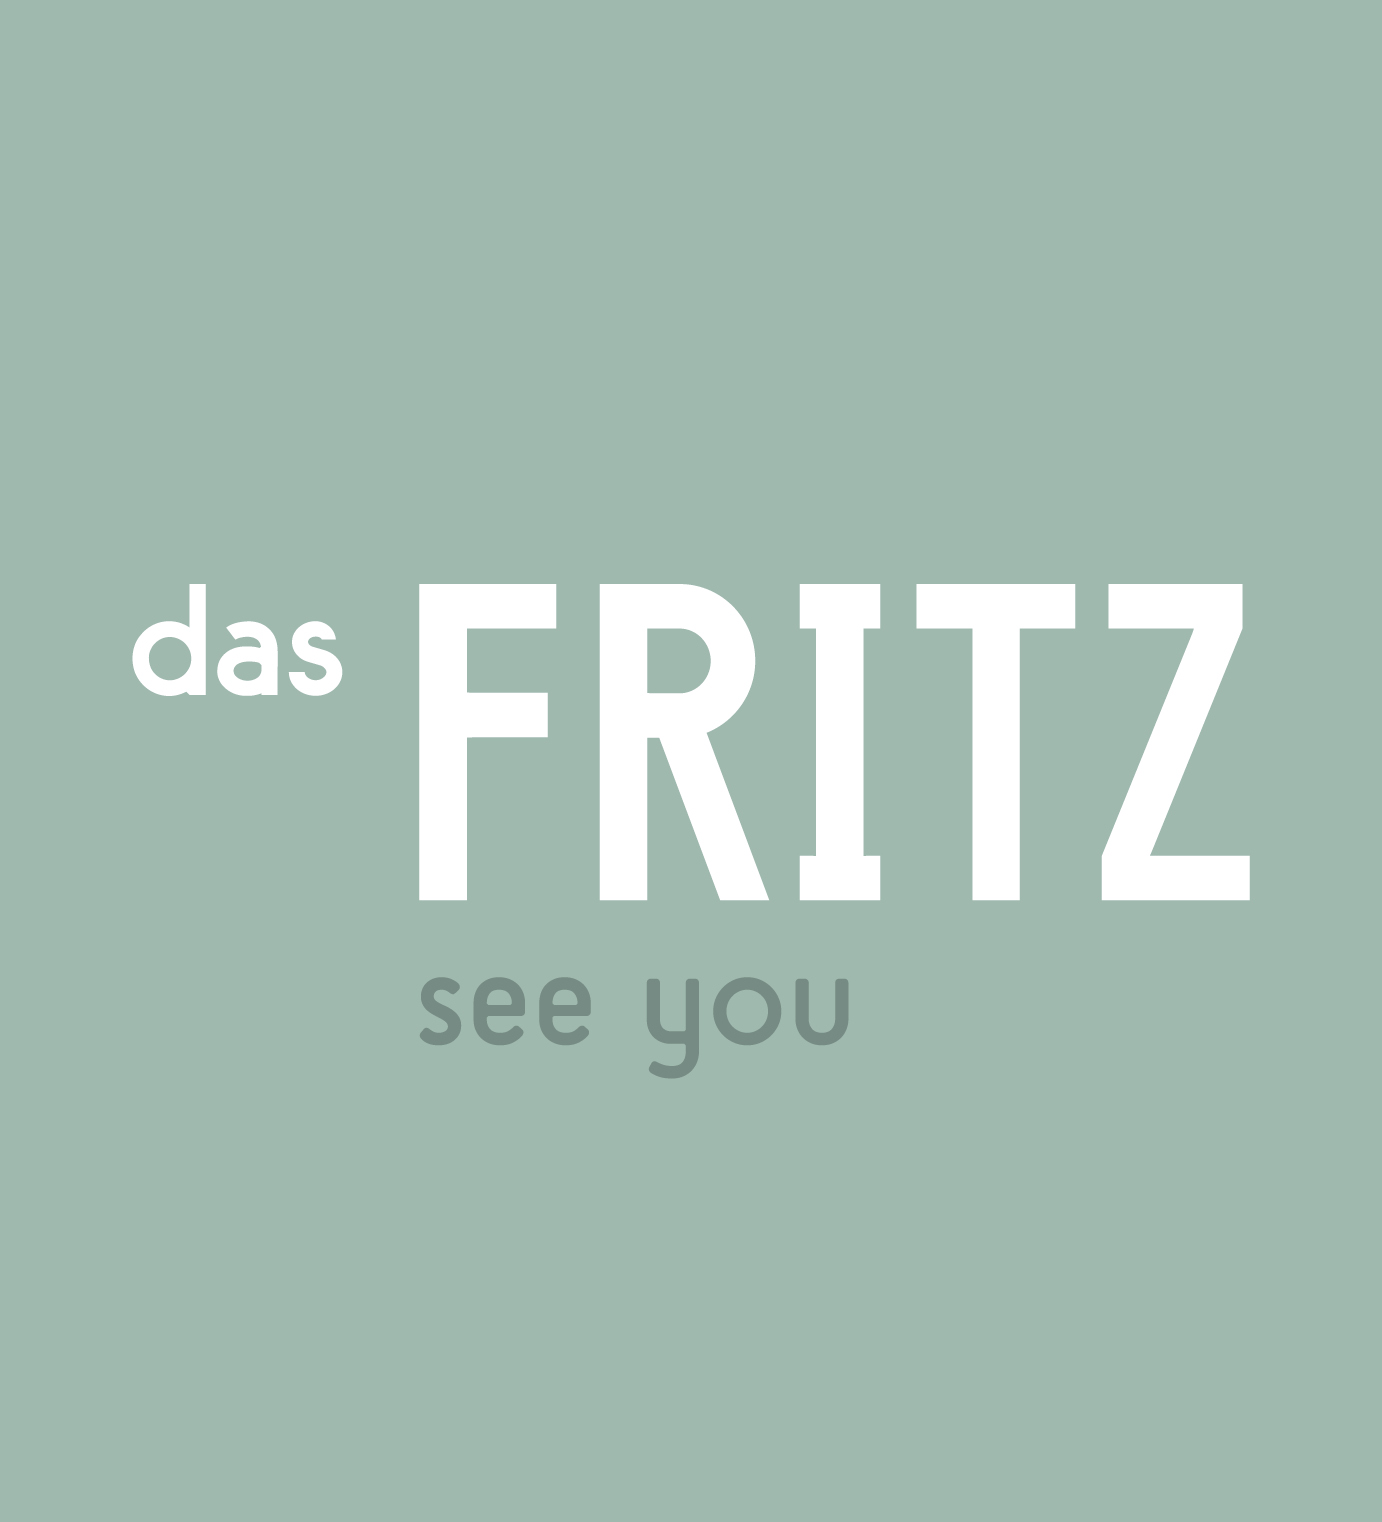 Das Logo von dem Restaurant "das Fritz"